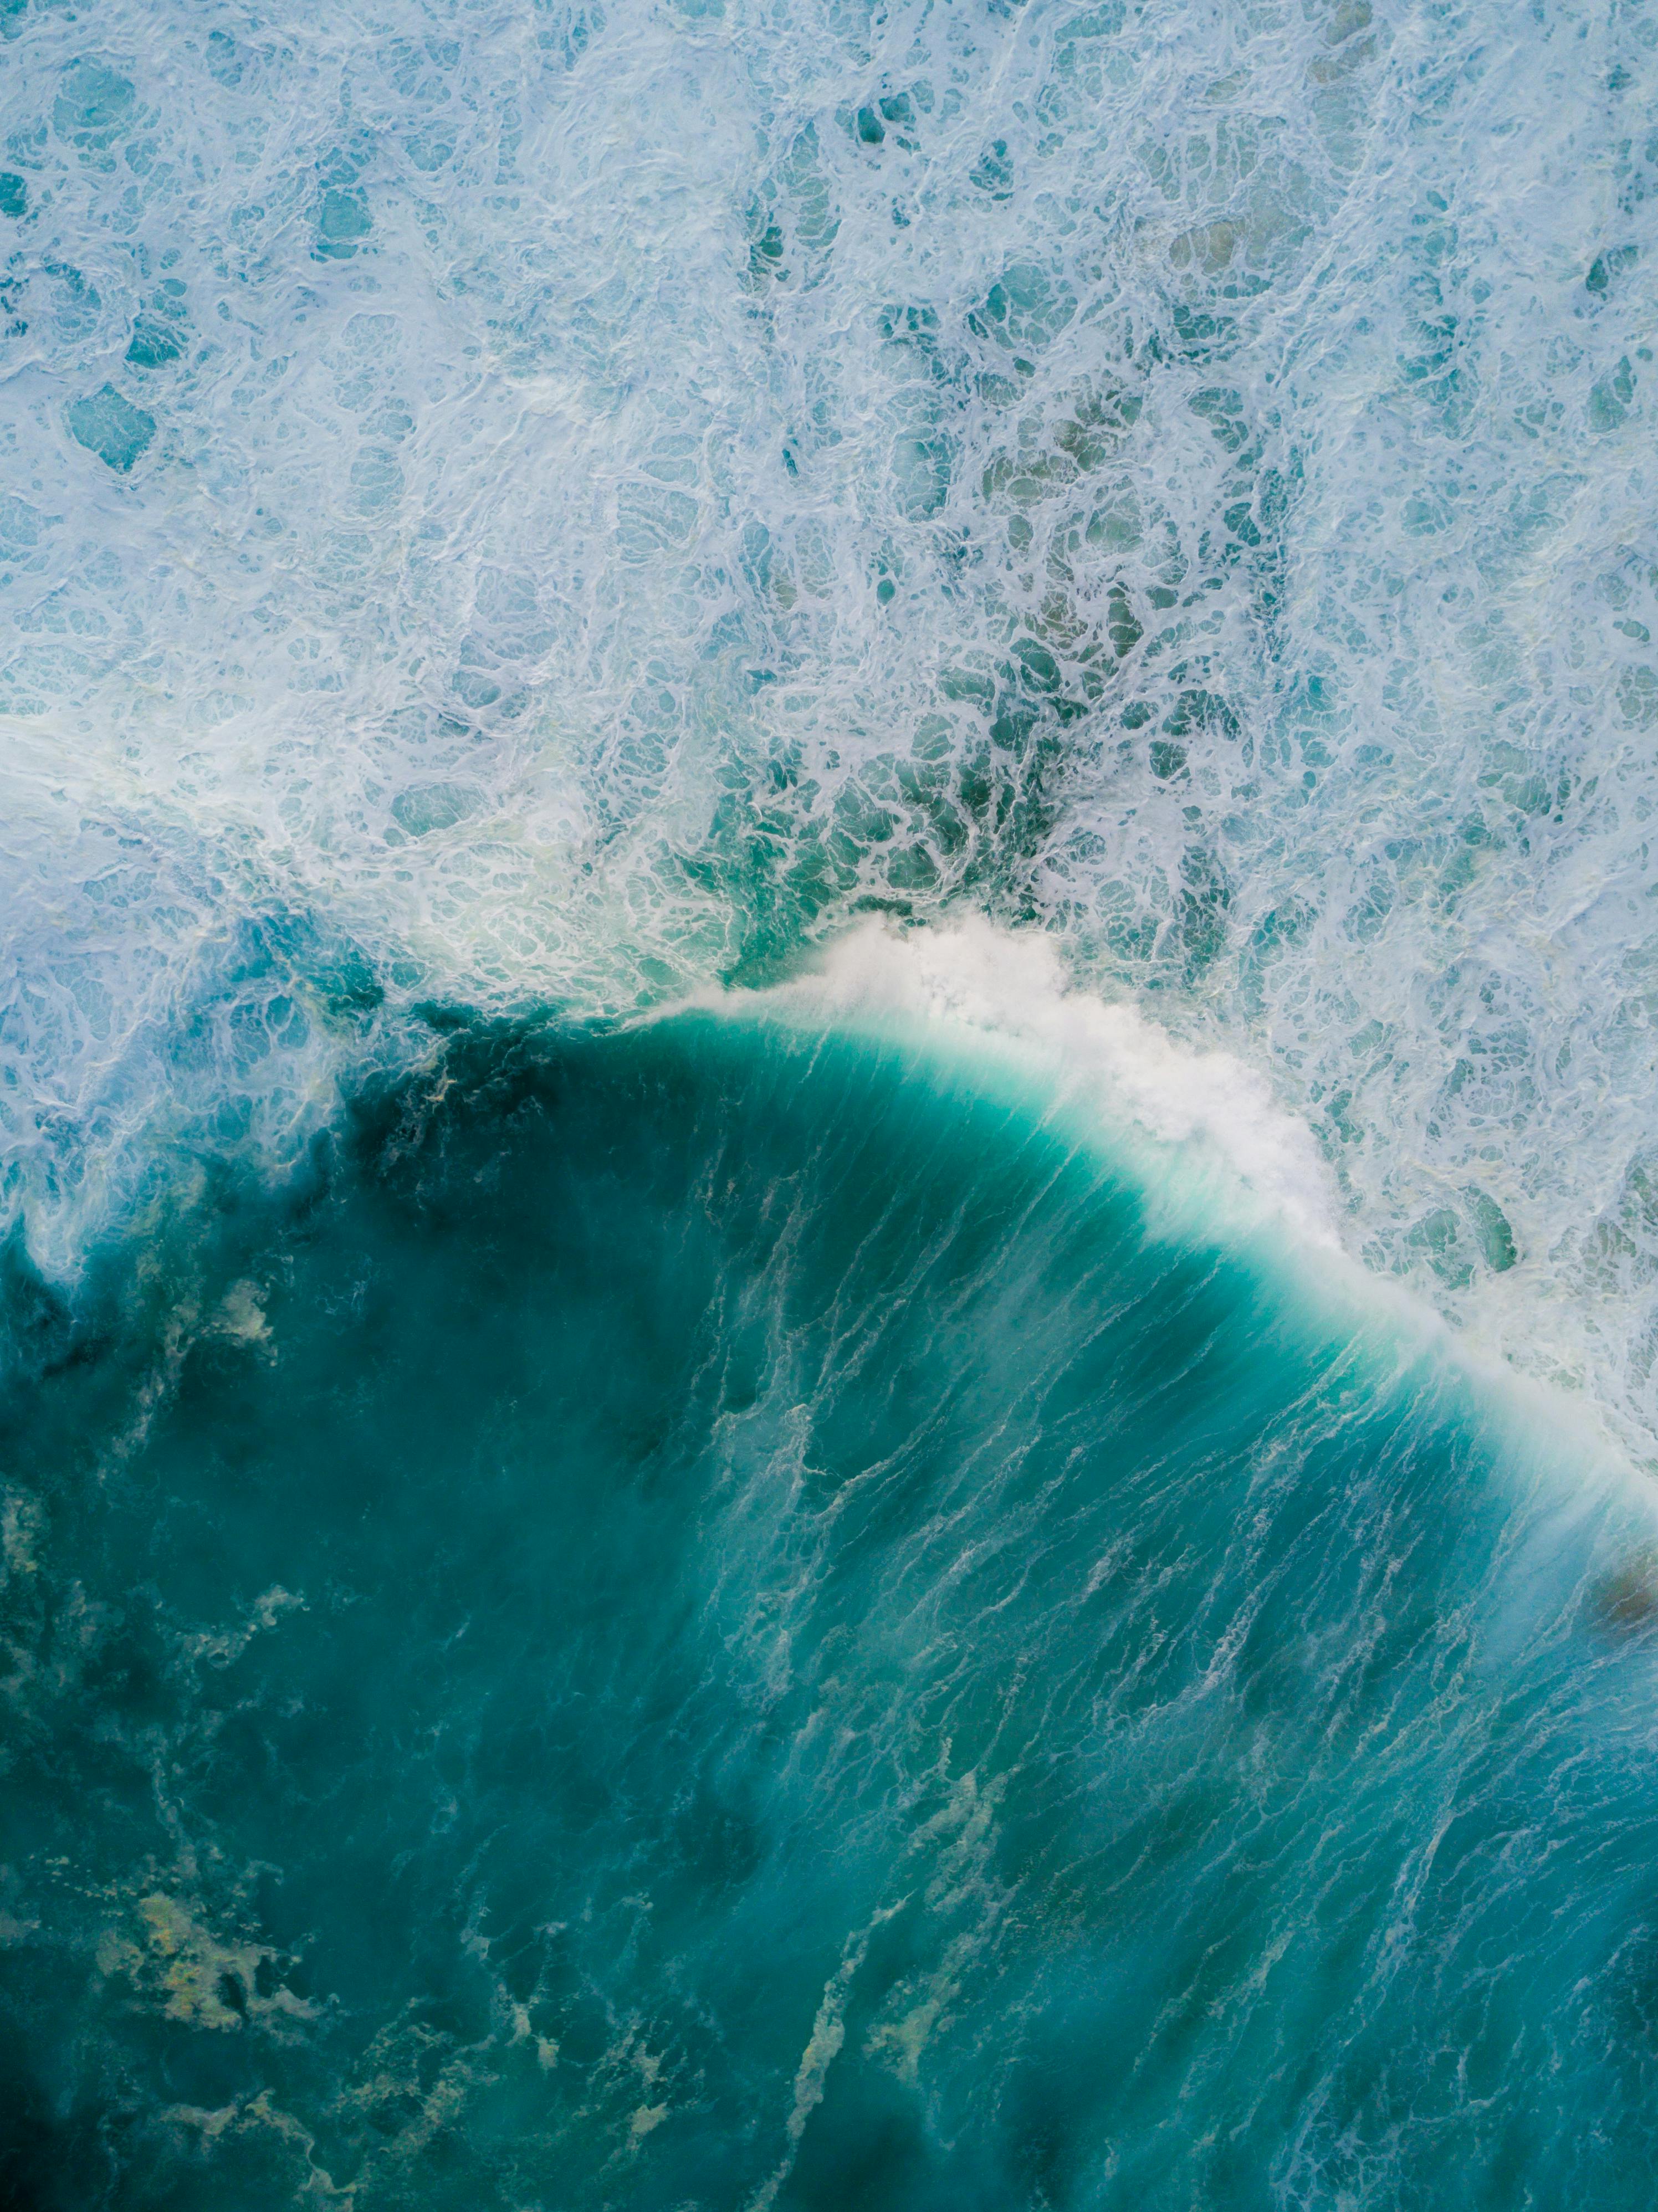 Hãy cùng khám phá bức ảnh sóng biển tuyệt đẹp này để cảm nhận được vẻ đẹp hoang sơ và hùng vĩ của biển cả. Những đợt sóng cao rợp trời và làn nước trong xanh sẽ làm bạn bị cuốn hút. 